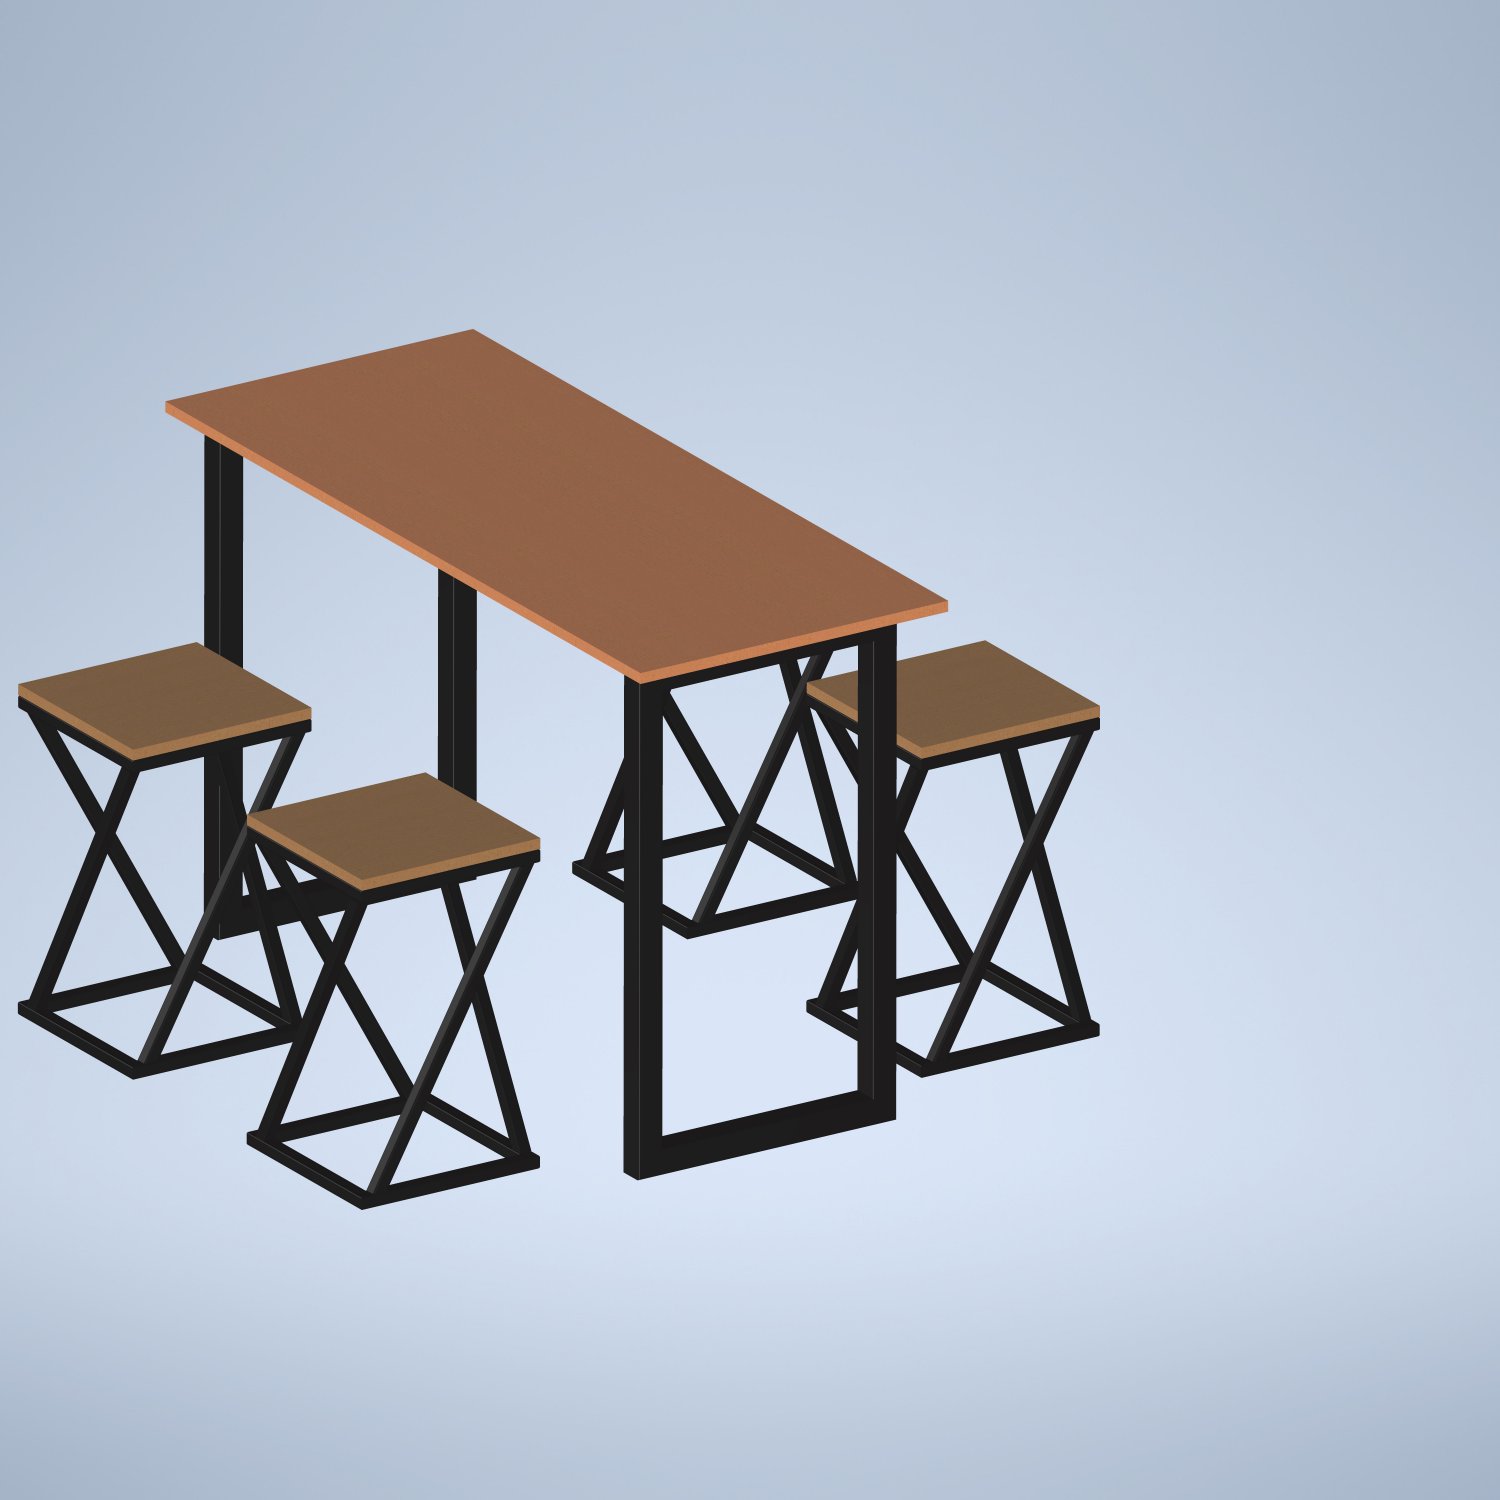 Cùng khám phá các mẫu bàn ăn và ghế trong kiểu dáng loft 3D model đặc sắc, mỗi chi tiết được thiết kế tinh tế và đẳng cấp để mang đến cho bạn không gian sống đẳng cấp và ấn tượng. Hãy tận hưởng không gian sống thú vị và độc đáo với các mẫu bàn và ghế được tạo ra bằng công nghệ 3D model chất lượng cao!